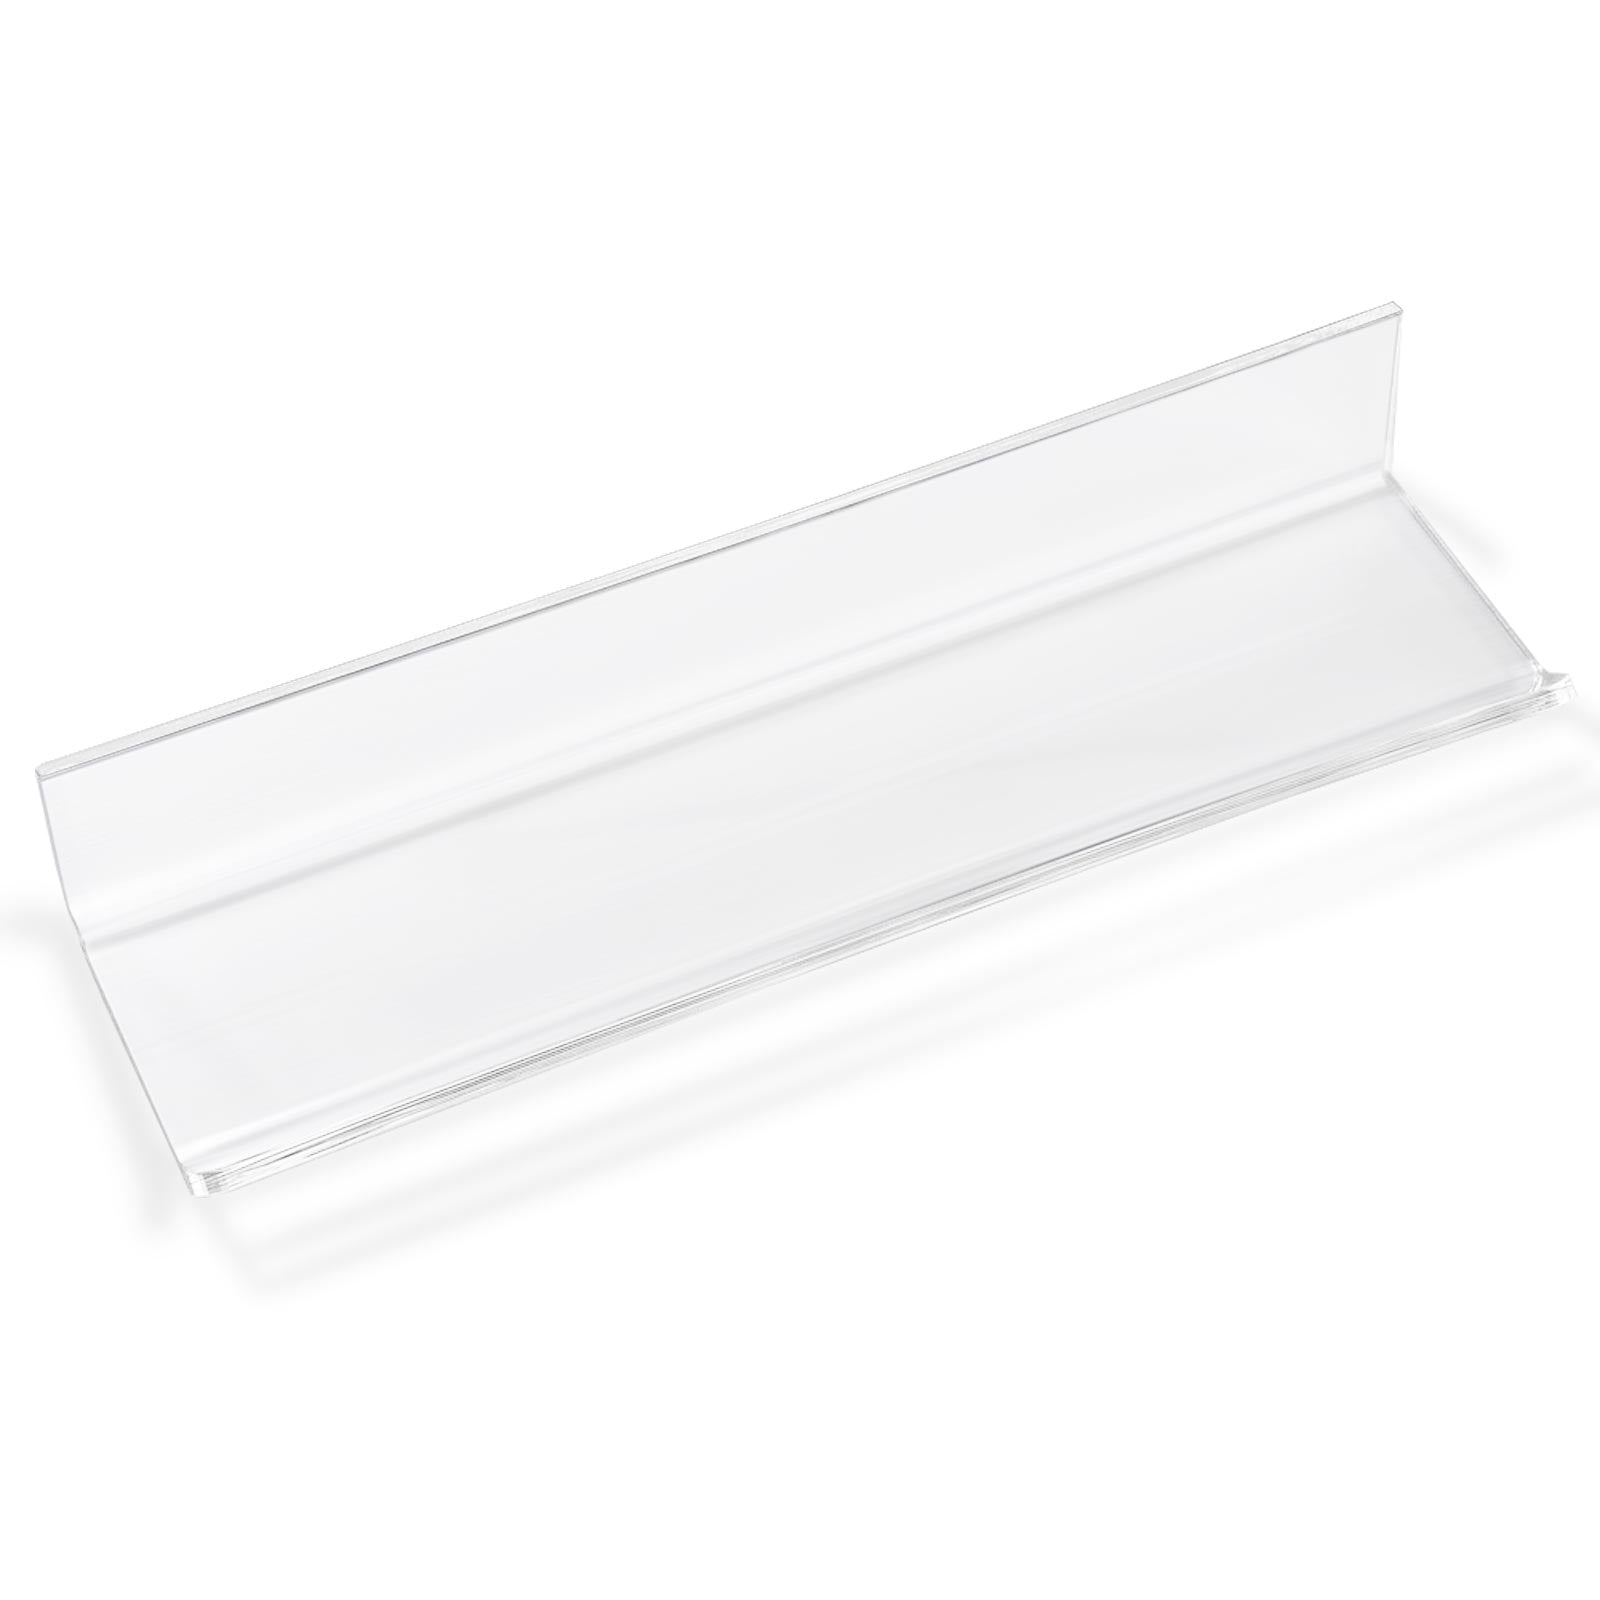 Ablageschale für Glas-Whiteboards | Acrylglas | Selbstklebend